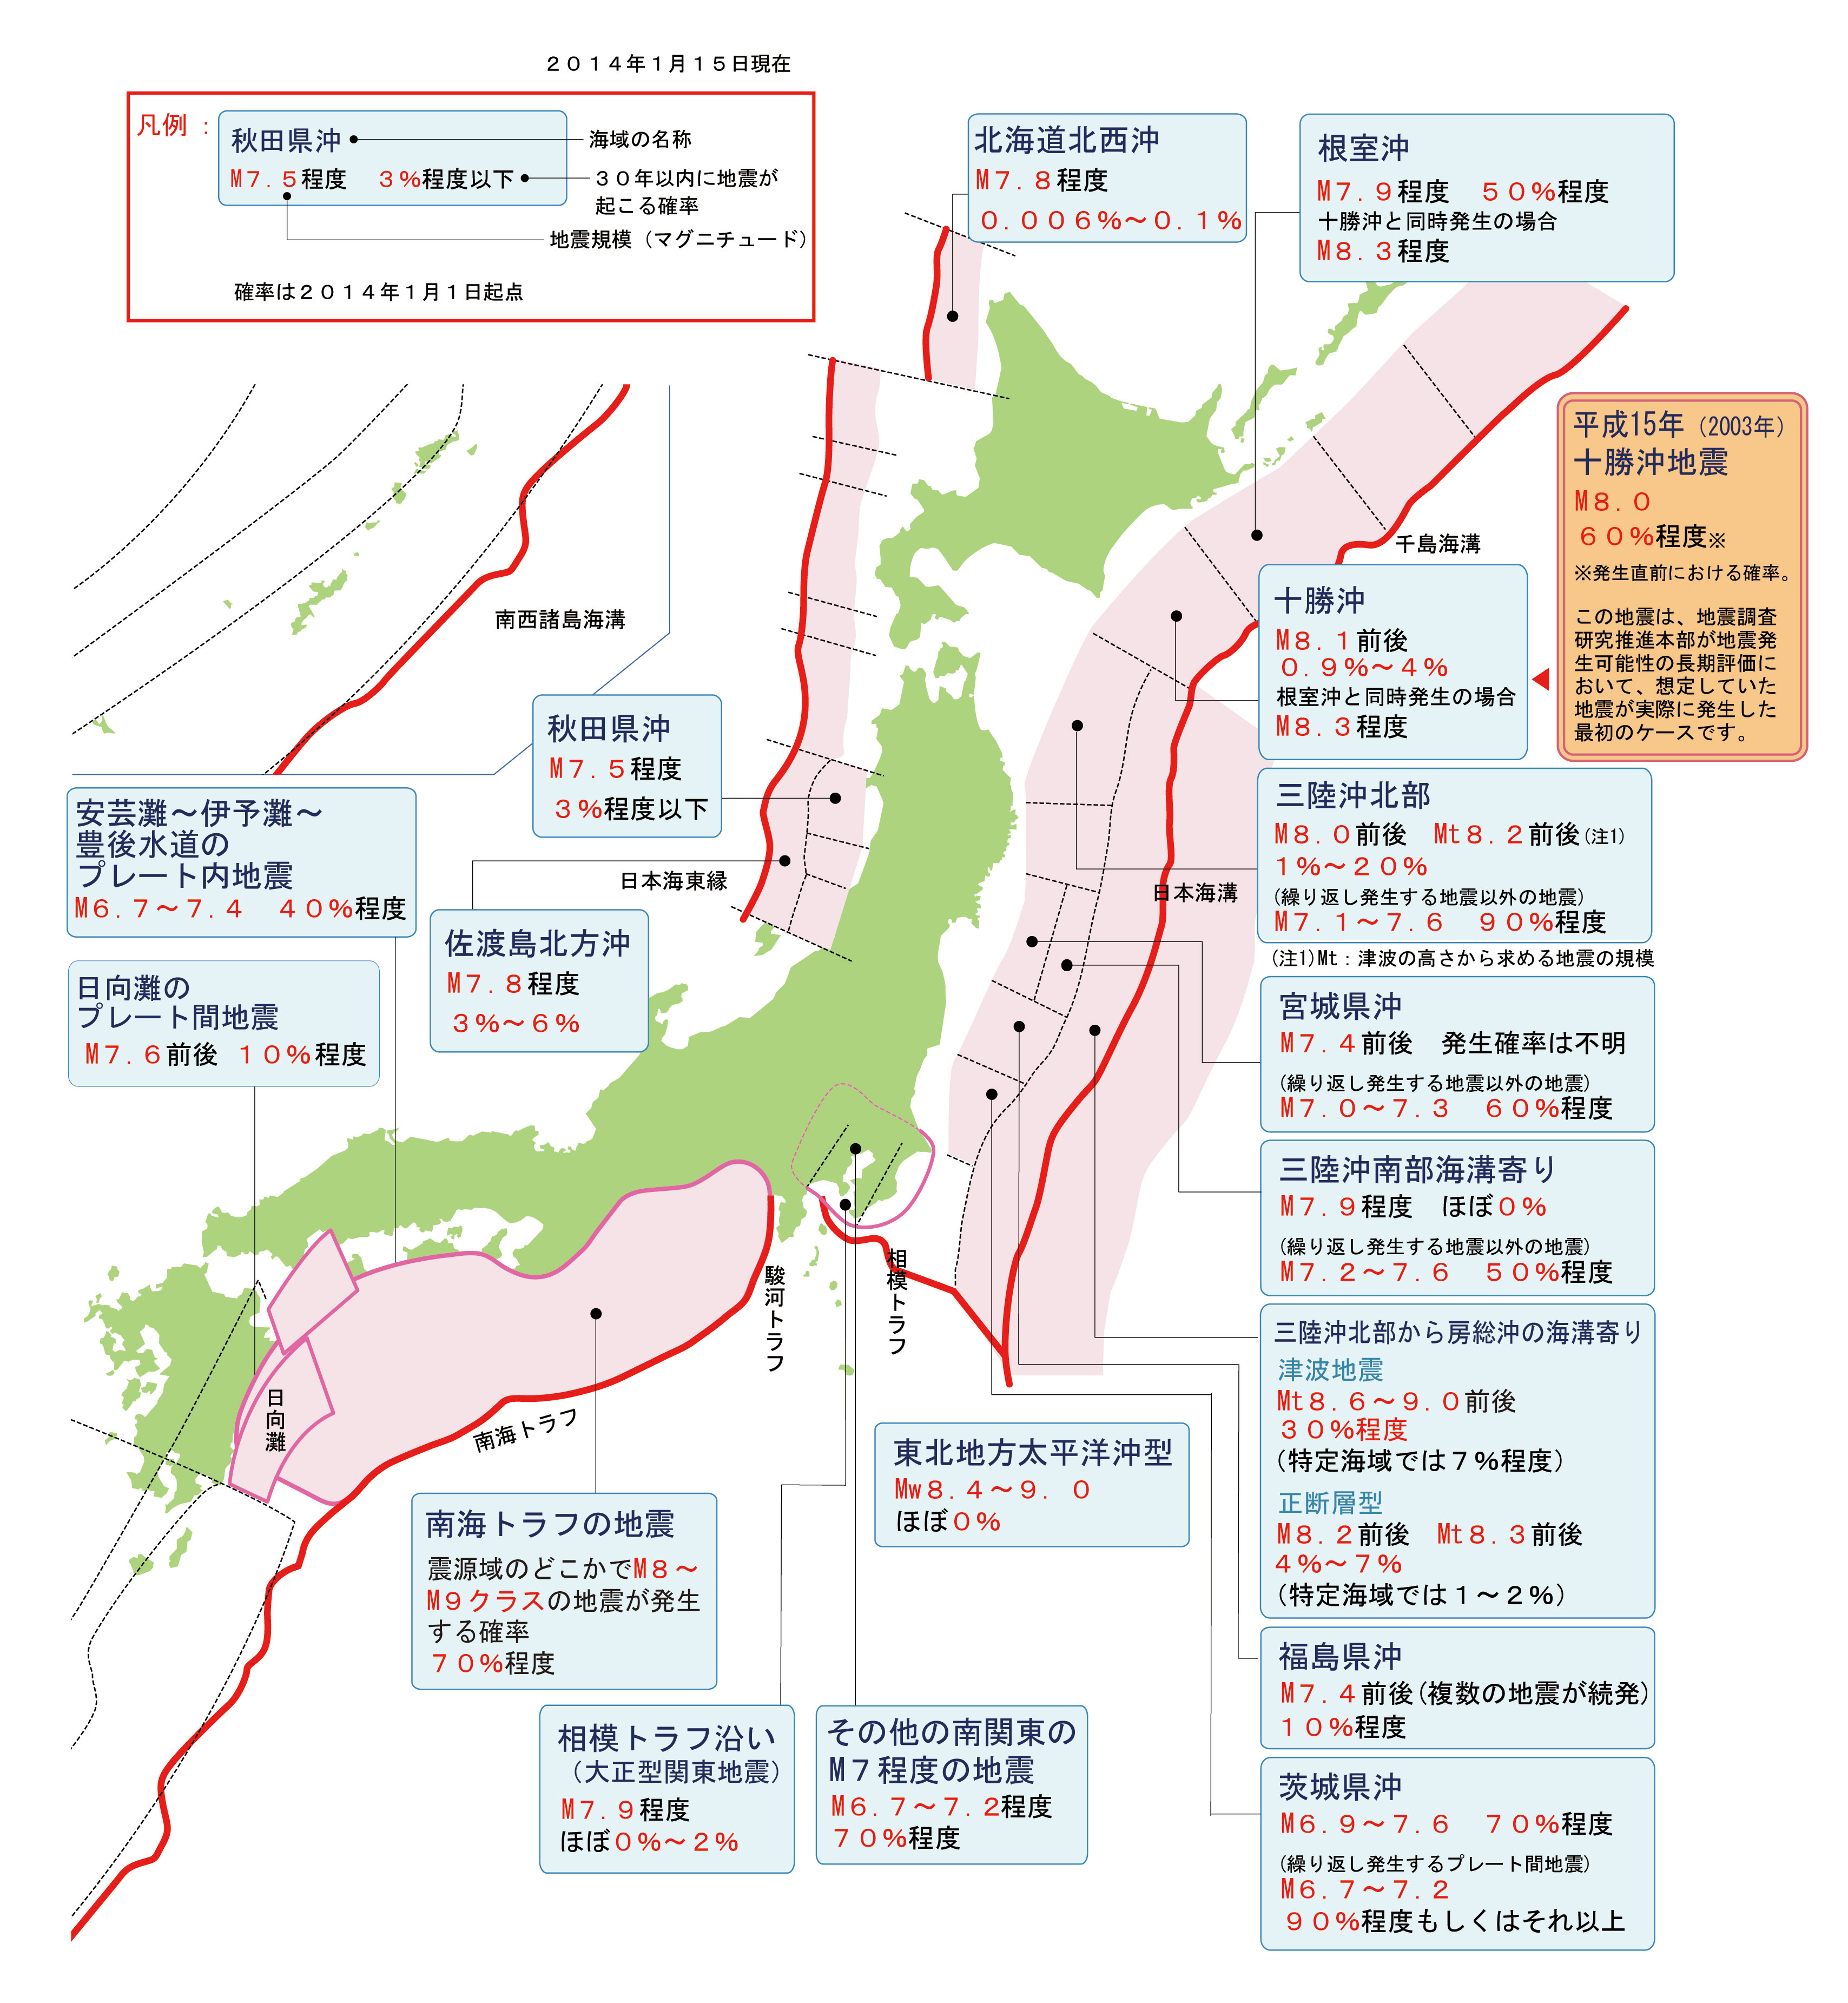 科学网—20110309－20110316日本6级以上地震平面分布特征及构造分析 - 陈辉的博文